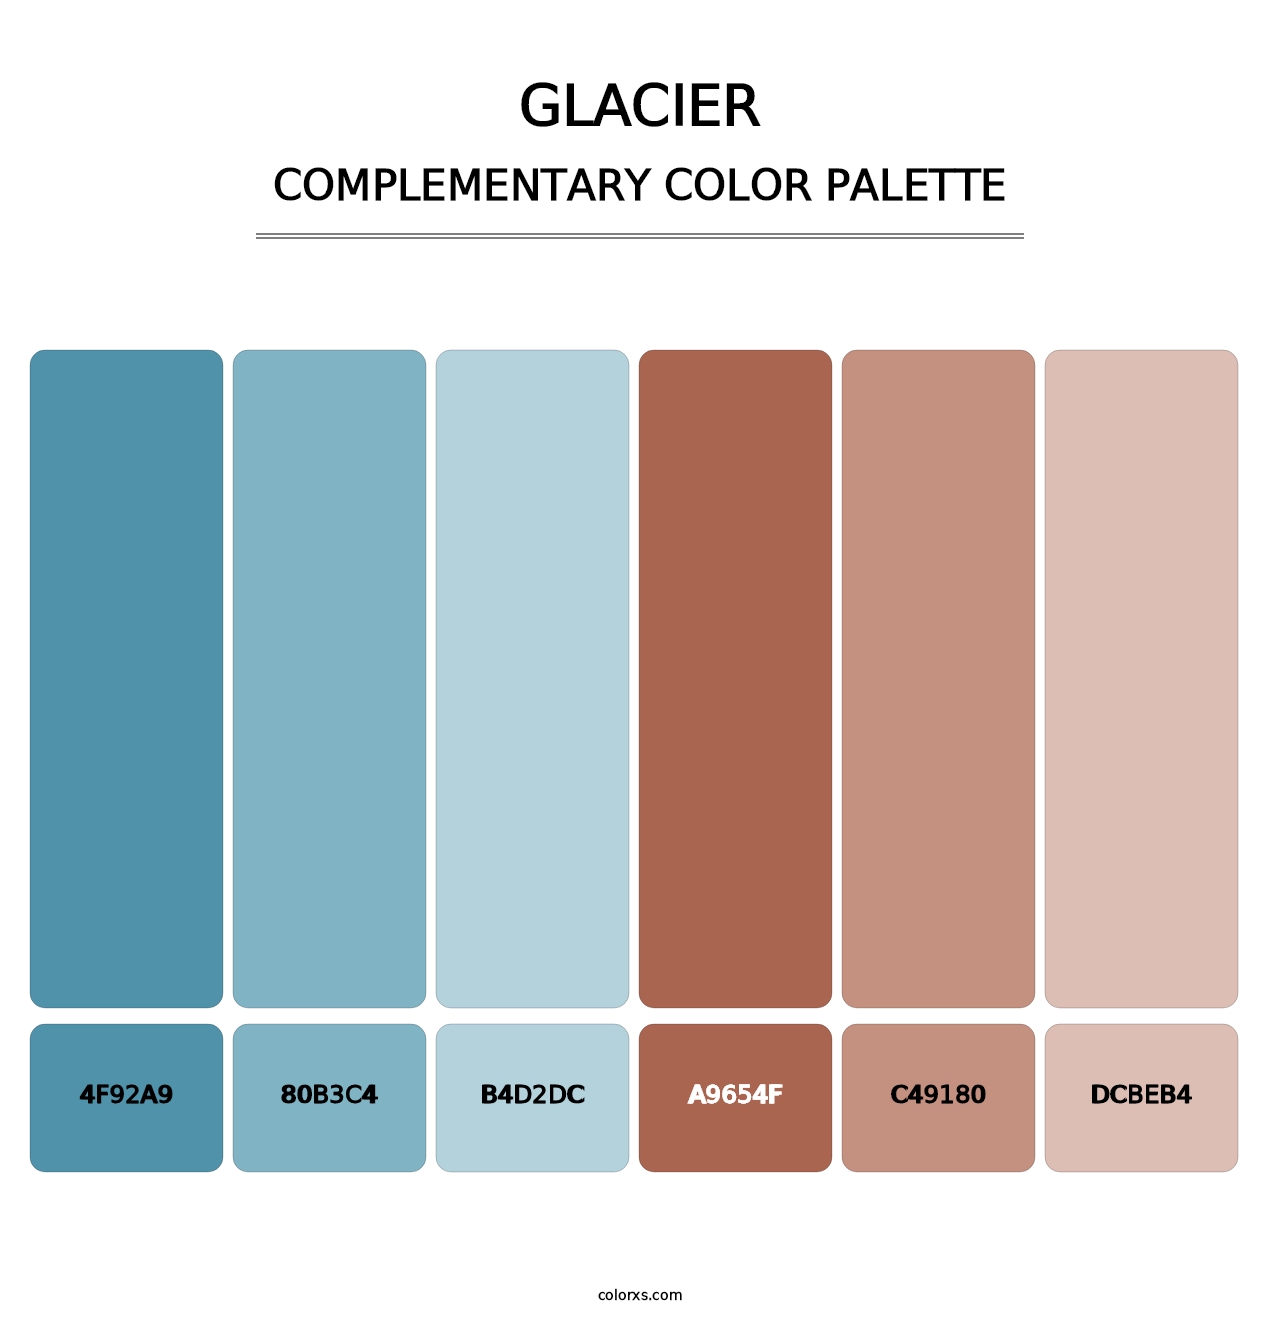 Glacier - Complementary Color Palette